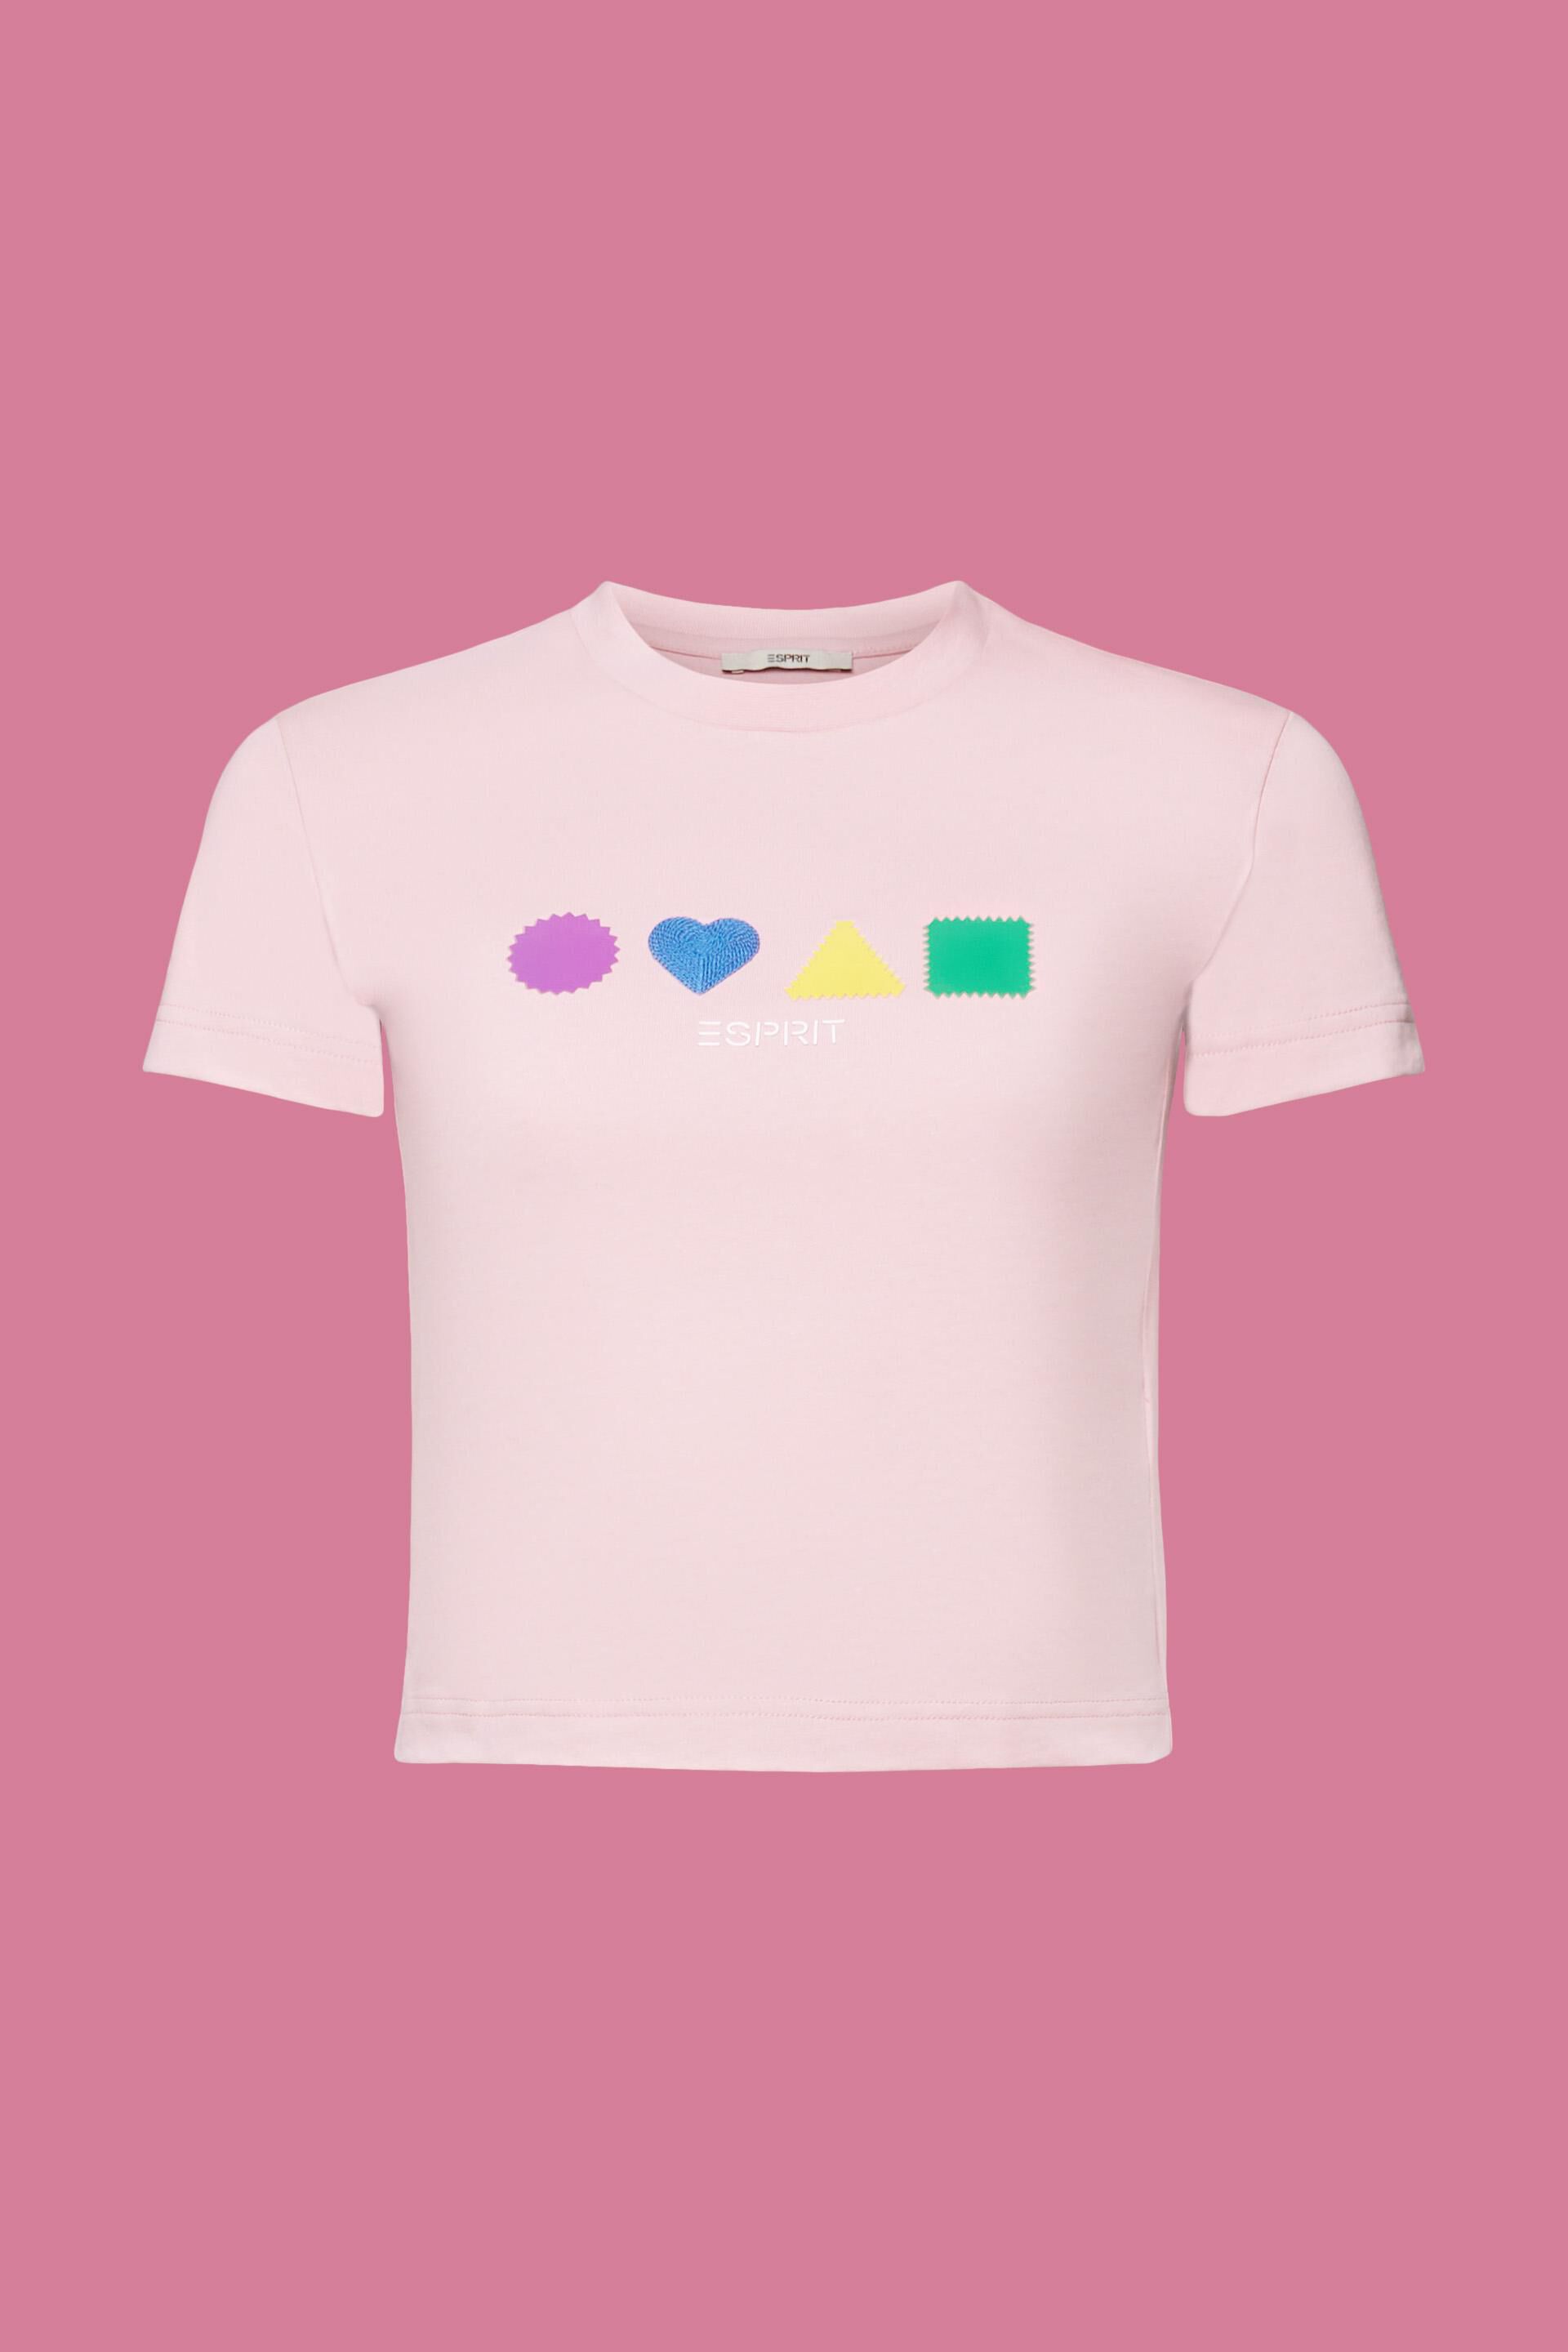 Esprit T-Shirt aus Bio-Baumwolle Geometrisches